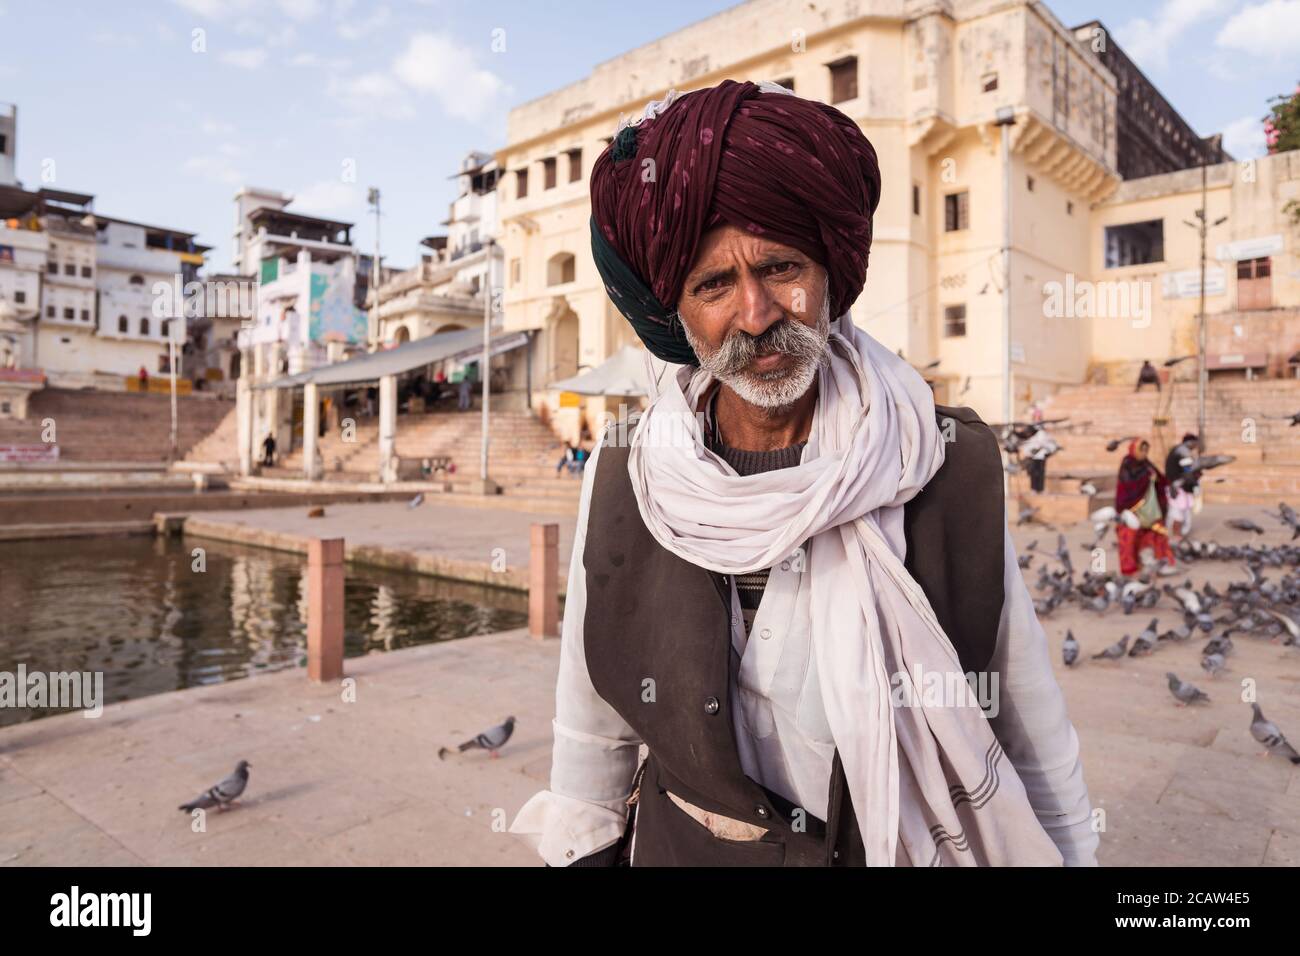 Pushkar / Indien - 6. März 2020: Porträt des Mannes mit grauen Schnurrbart und typischen Rajasthani Turban in der Umgebung des heiligen See von Pushkar Stockfoto